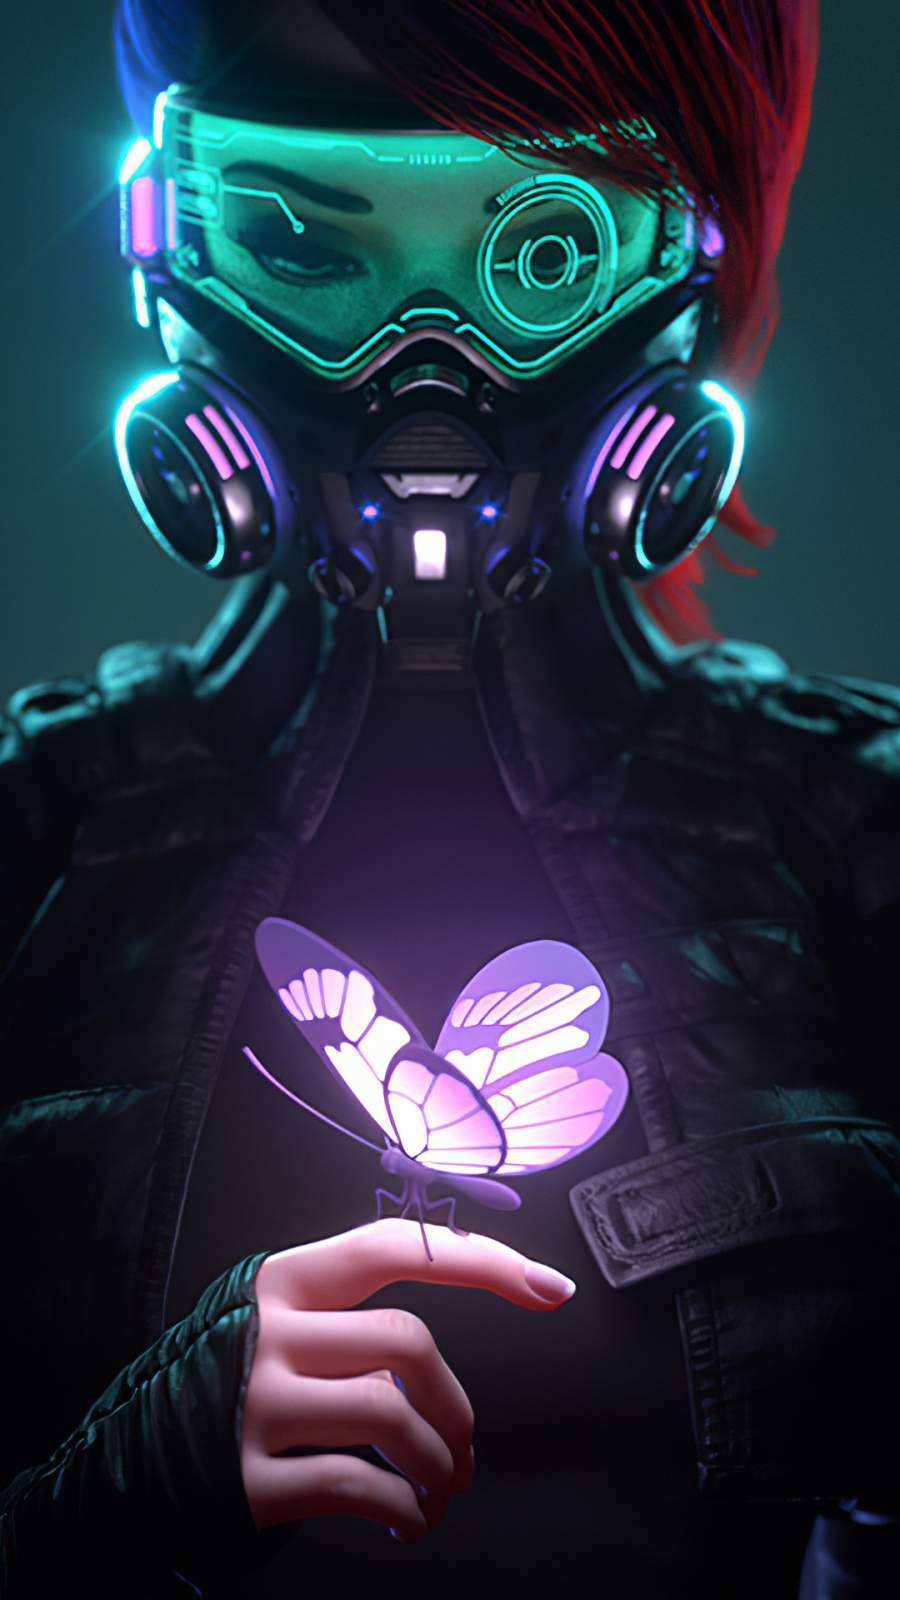 Butterfly Cyberpunk iPhone X Wallpaper